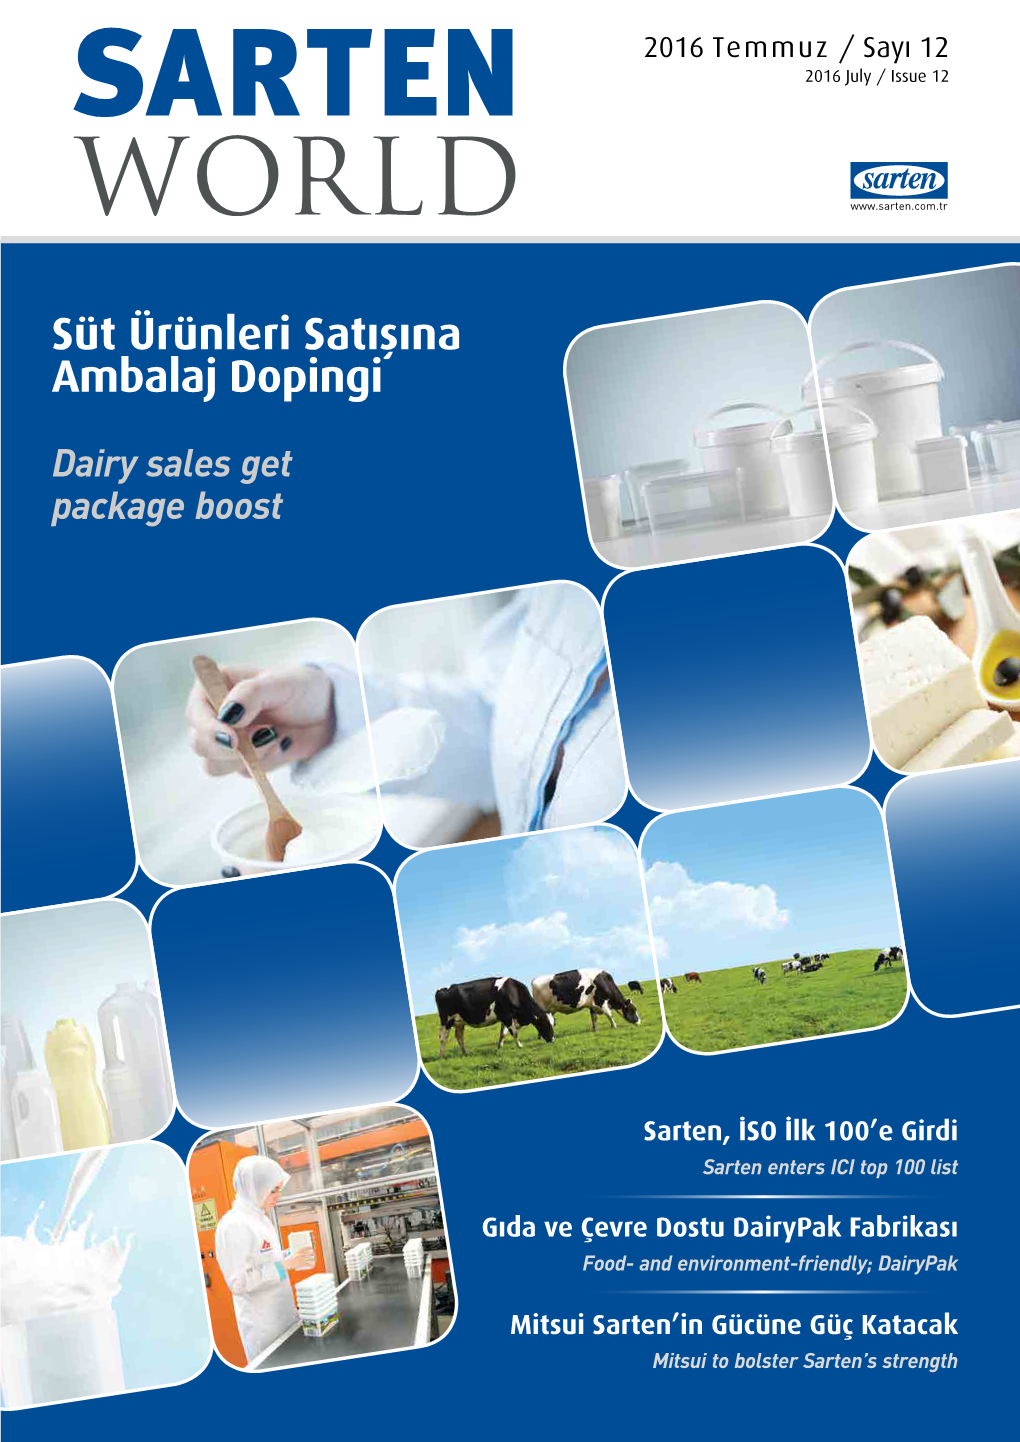 Süt Ürünleri Satışına Ambalaj Dopingi